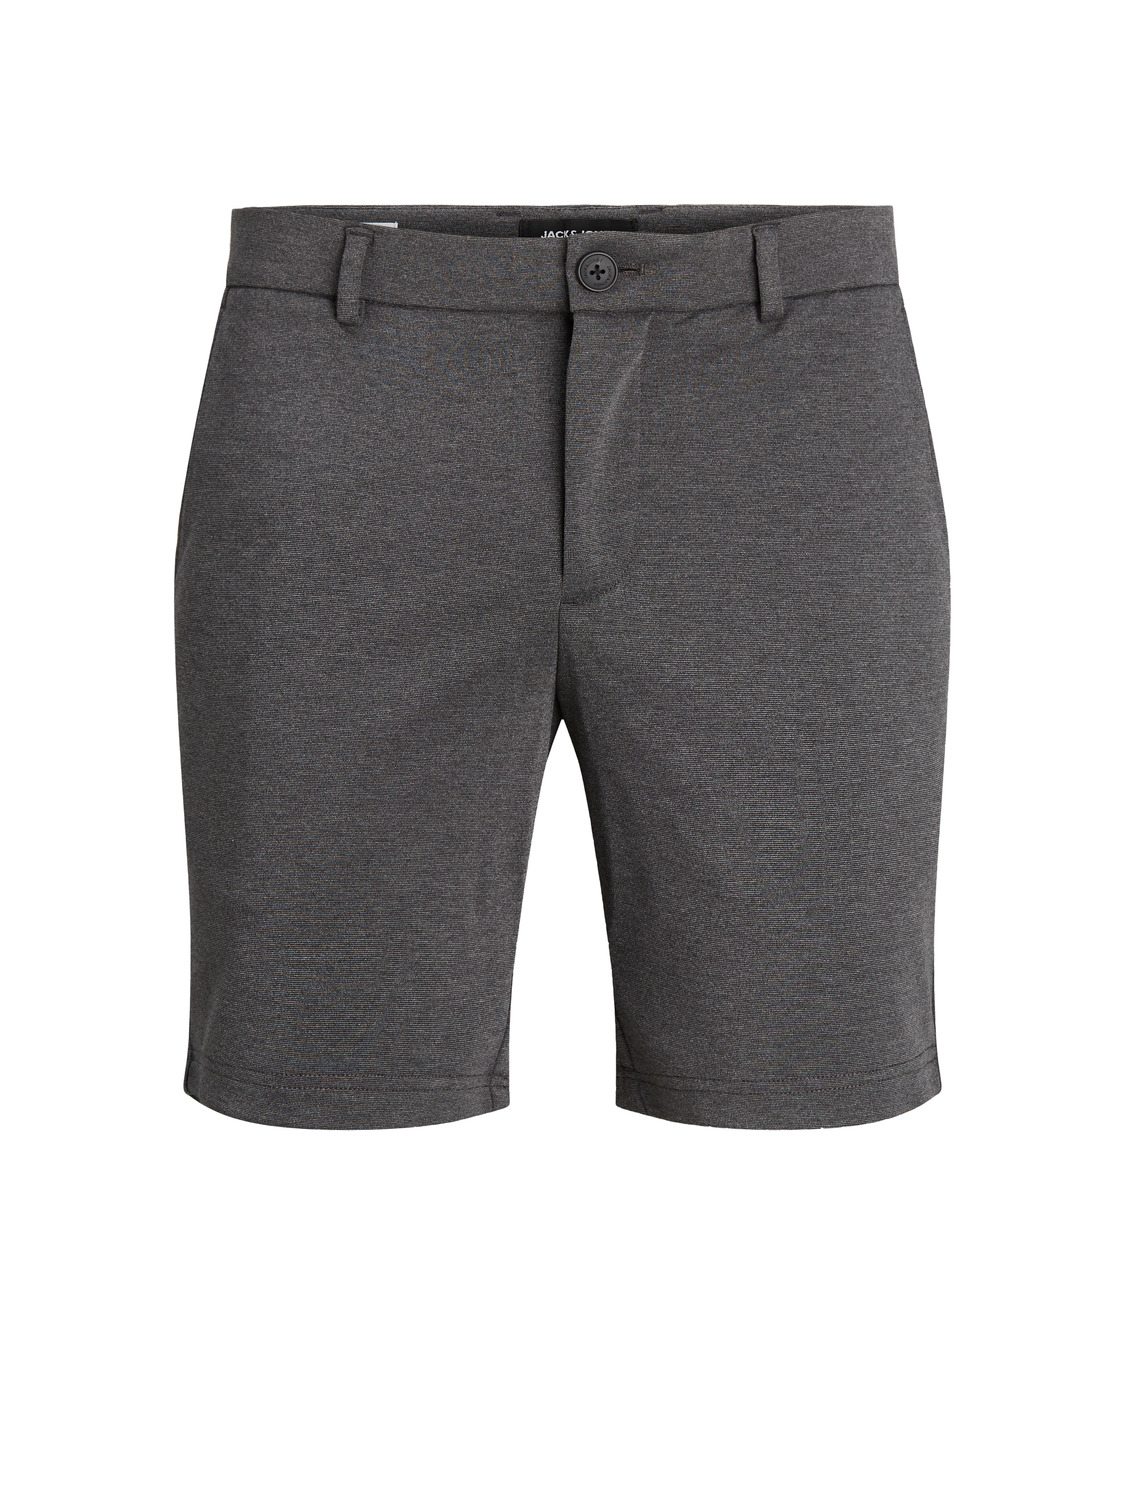 Jack & Jones Phil shorts, grey melange, xx-large 